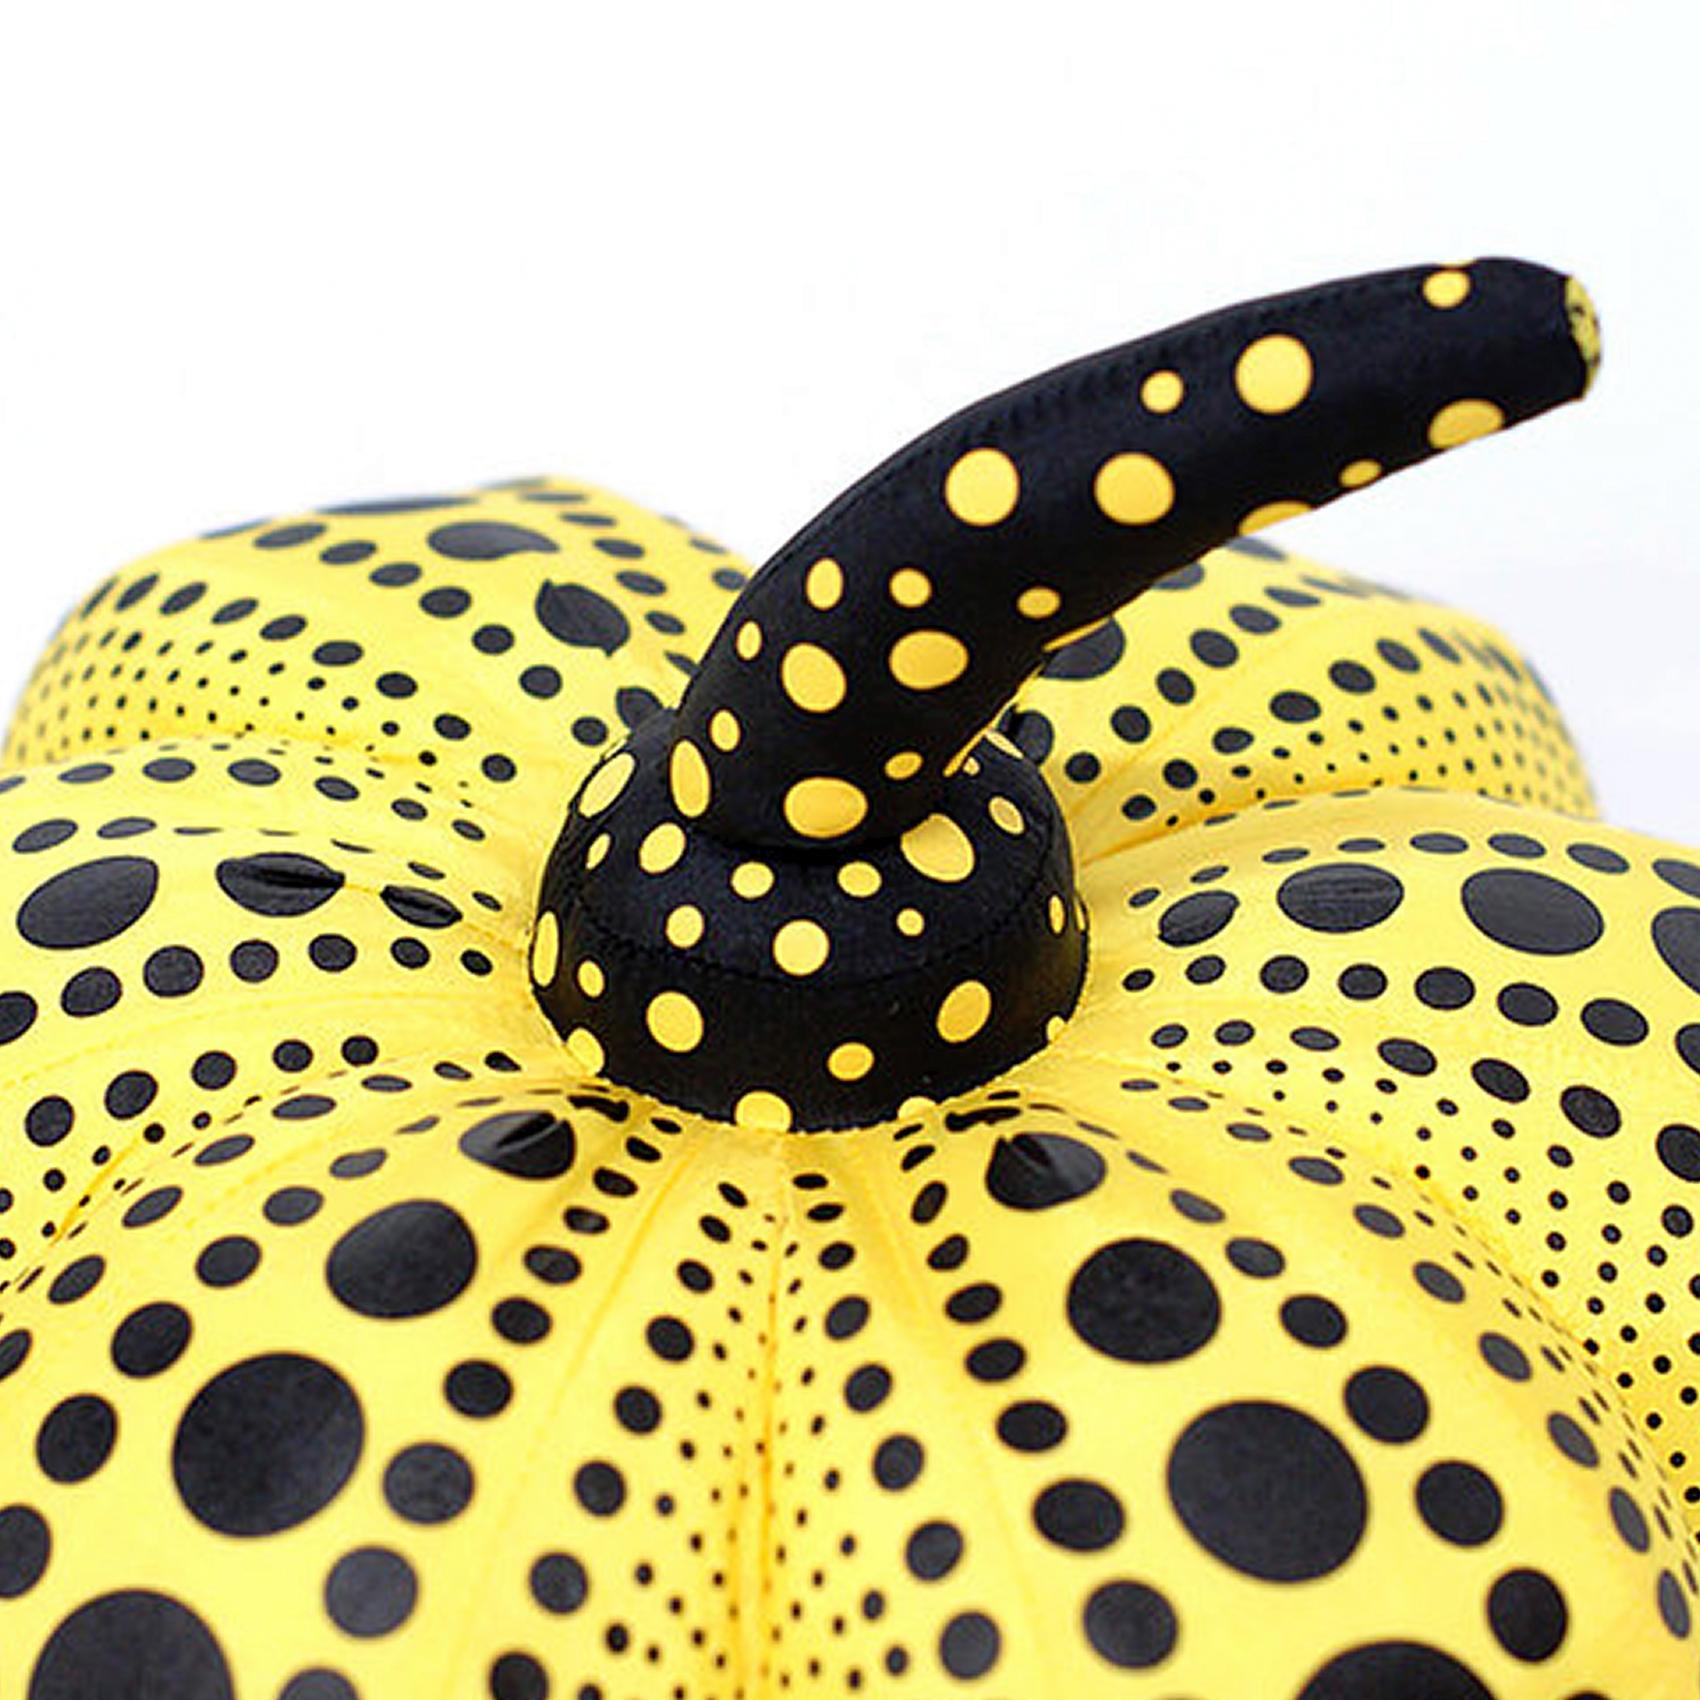 Yayoi Kusama Gelb-Schwarzer Kürbis (Plüsch):
Ein ikonisches, farbenfrohes Pop-Art-Werk - dieser große Kusama-Plüschkürbis weist die universellen Polka-Dot-Muster und kräftigen Farben auf, für die die Künstlerin vielleicht am besten bekannt ist.